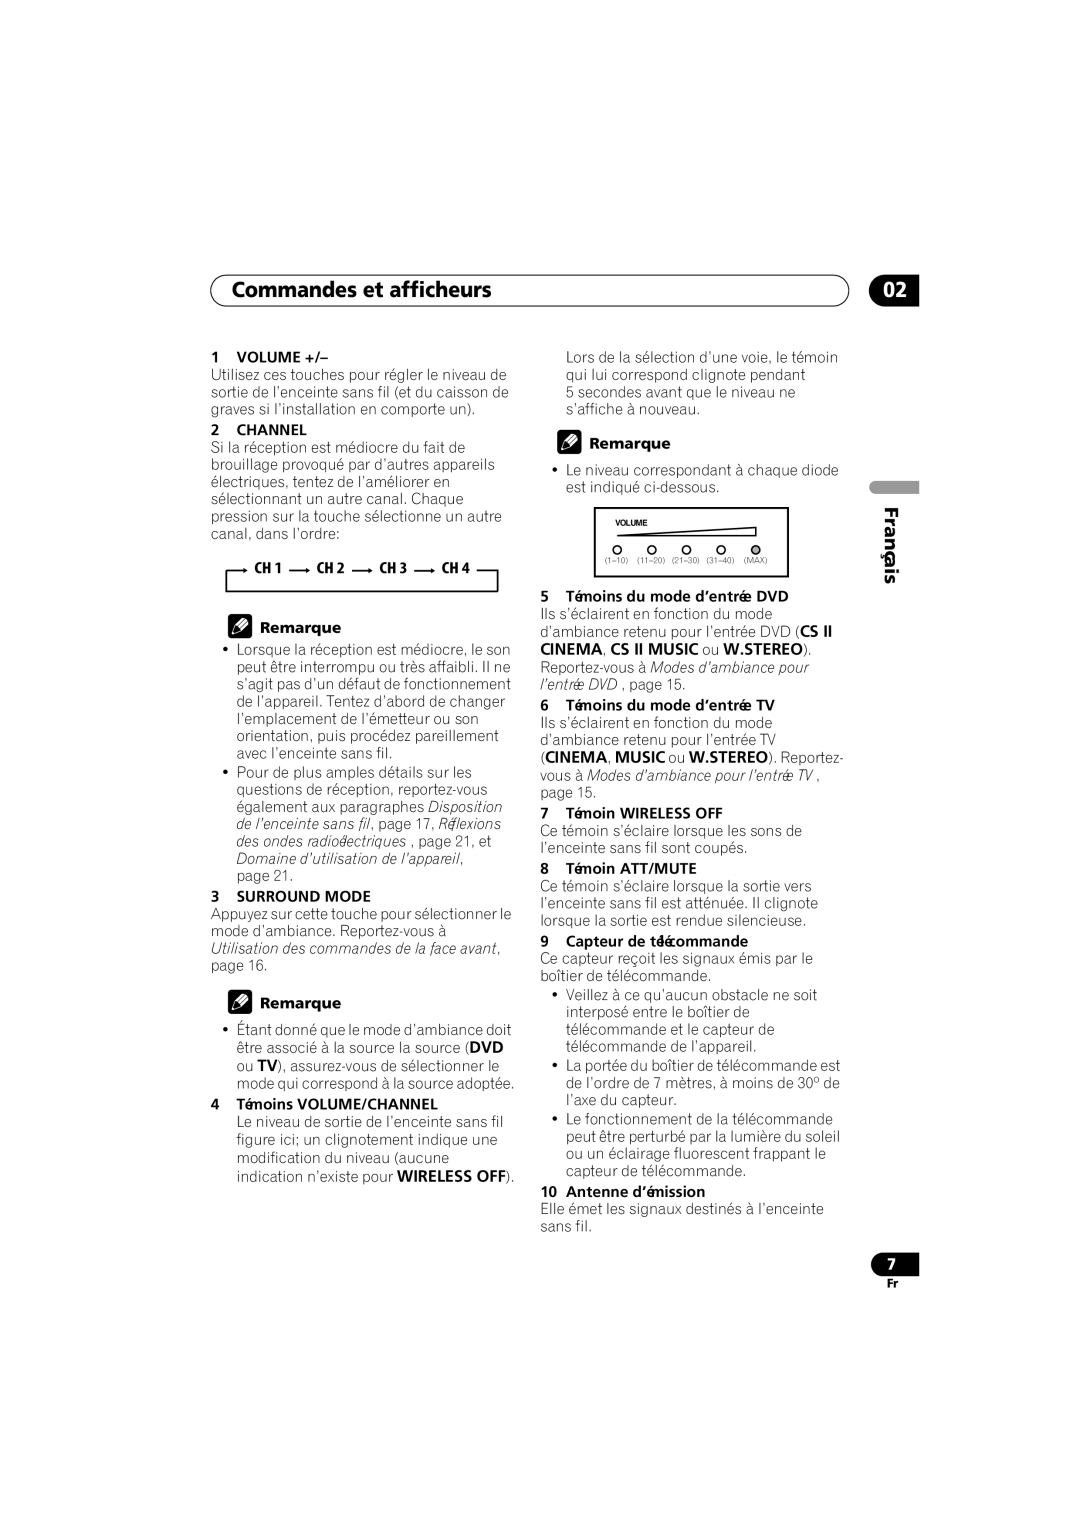 Pioneer XW-HT1 manual Commandes et afficheurs, Français, CH 1 CH 2 CH 3 CH 